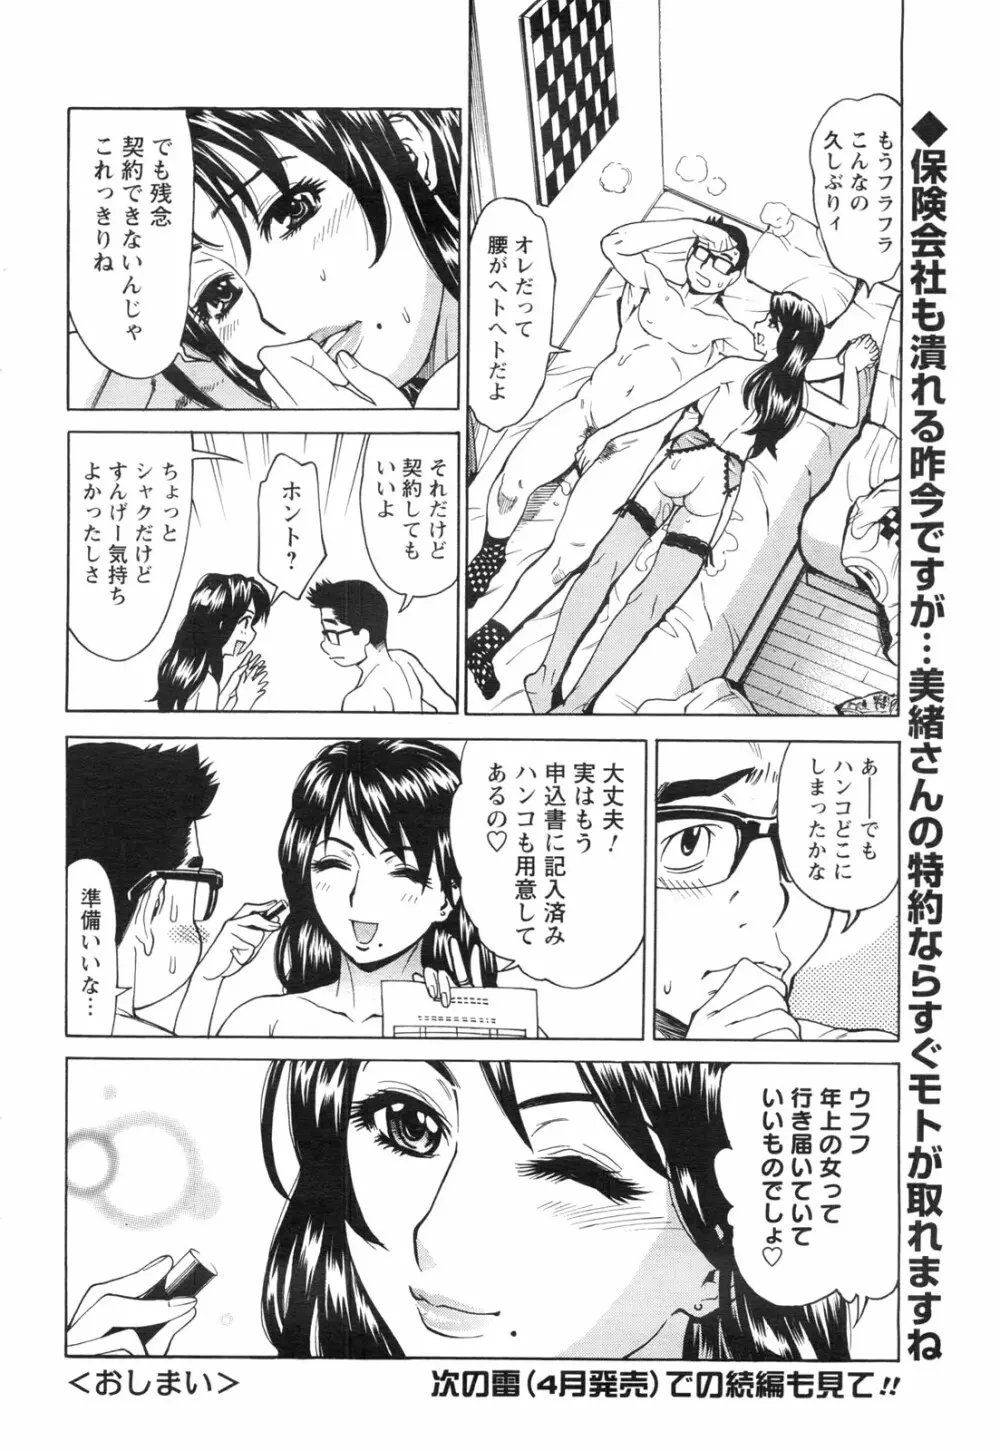 メンズヤングスペシャルIKAZUCHI雷 Vol.13 2010年3月号増刊 71ページ